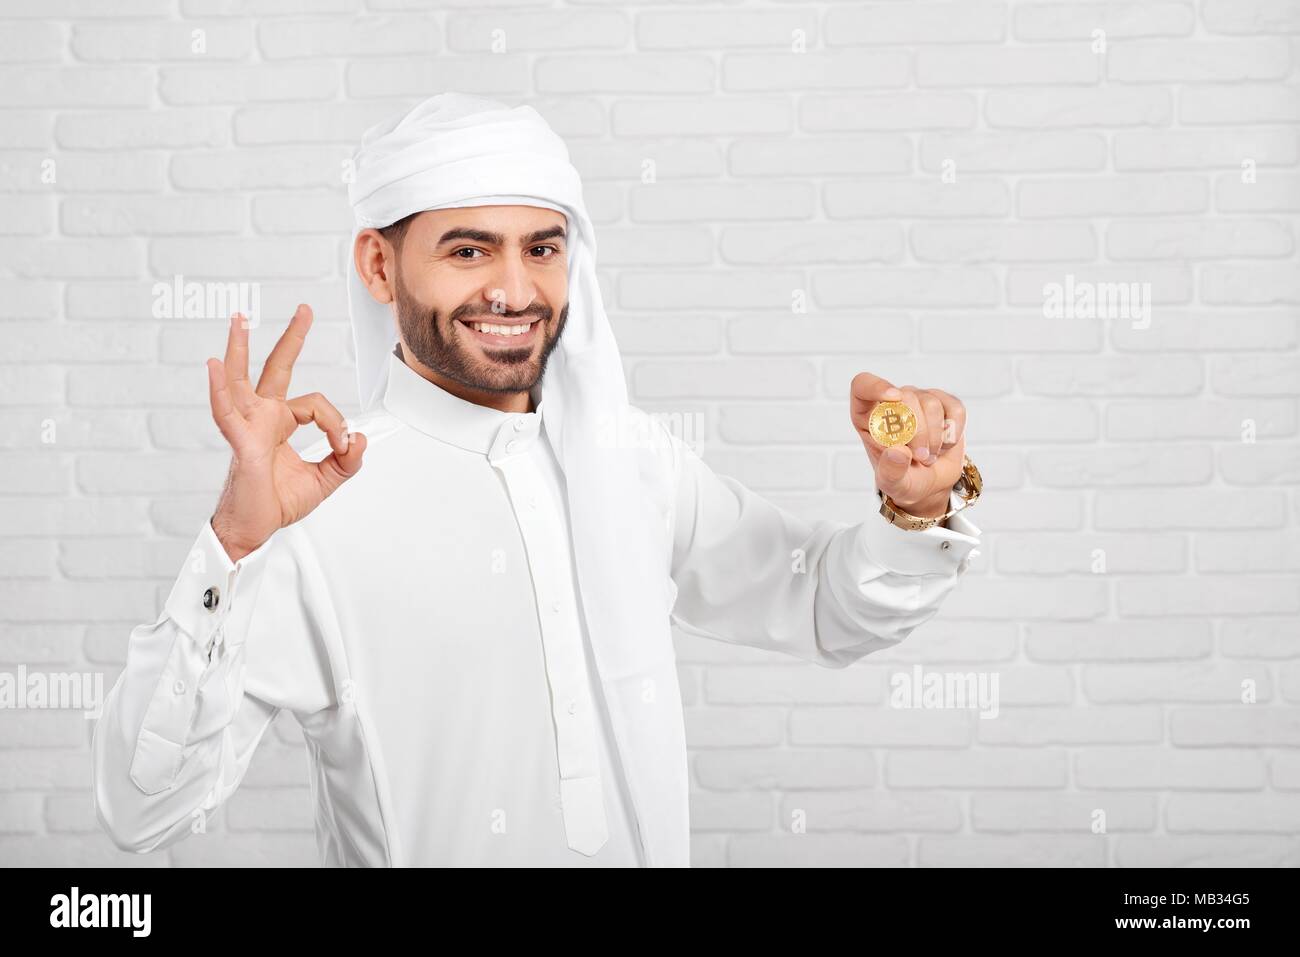 L'homme conserve arabe souriante et a l'air très heureux des bitcoins, debout sur fond blanc. Il porte le costume traditionnel arabe blanc,golden watch et les boutons de manchette. Un homme d'affaires semble positive et heureuse. Banque D'Images